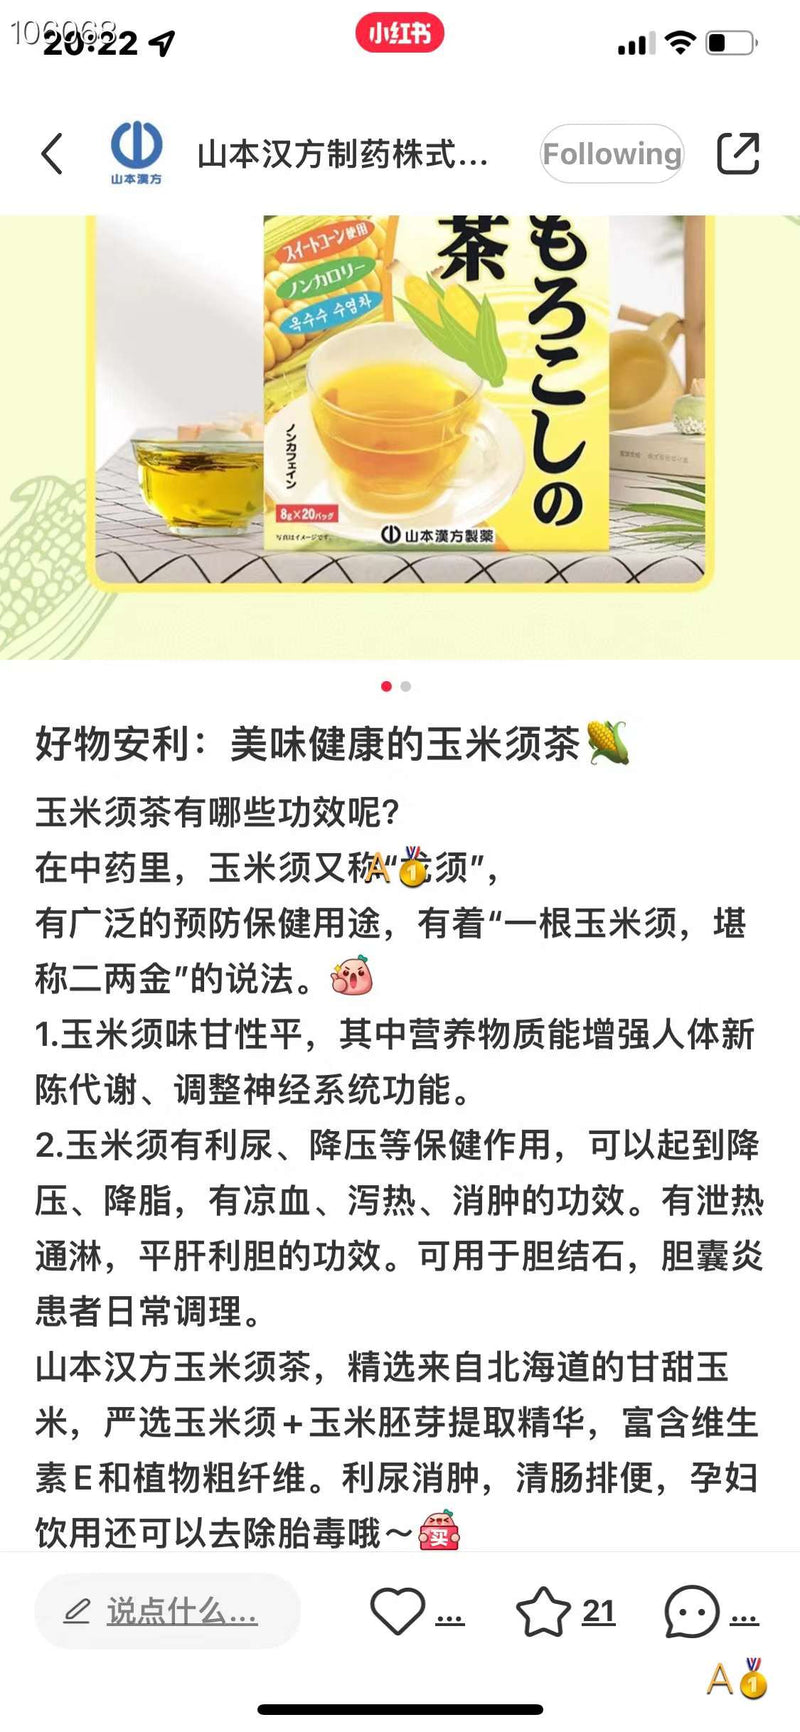 Yamamoto Kampo Anti-Swelling Corn Health Tea